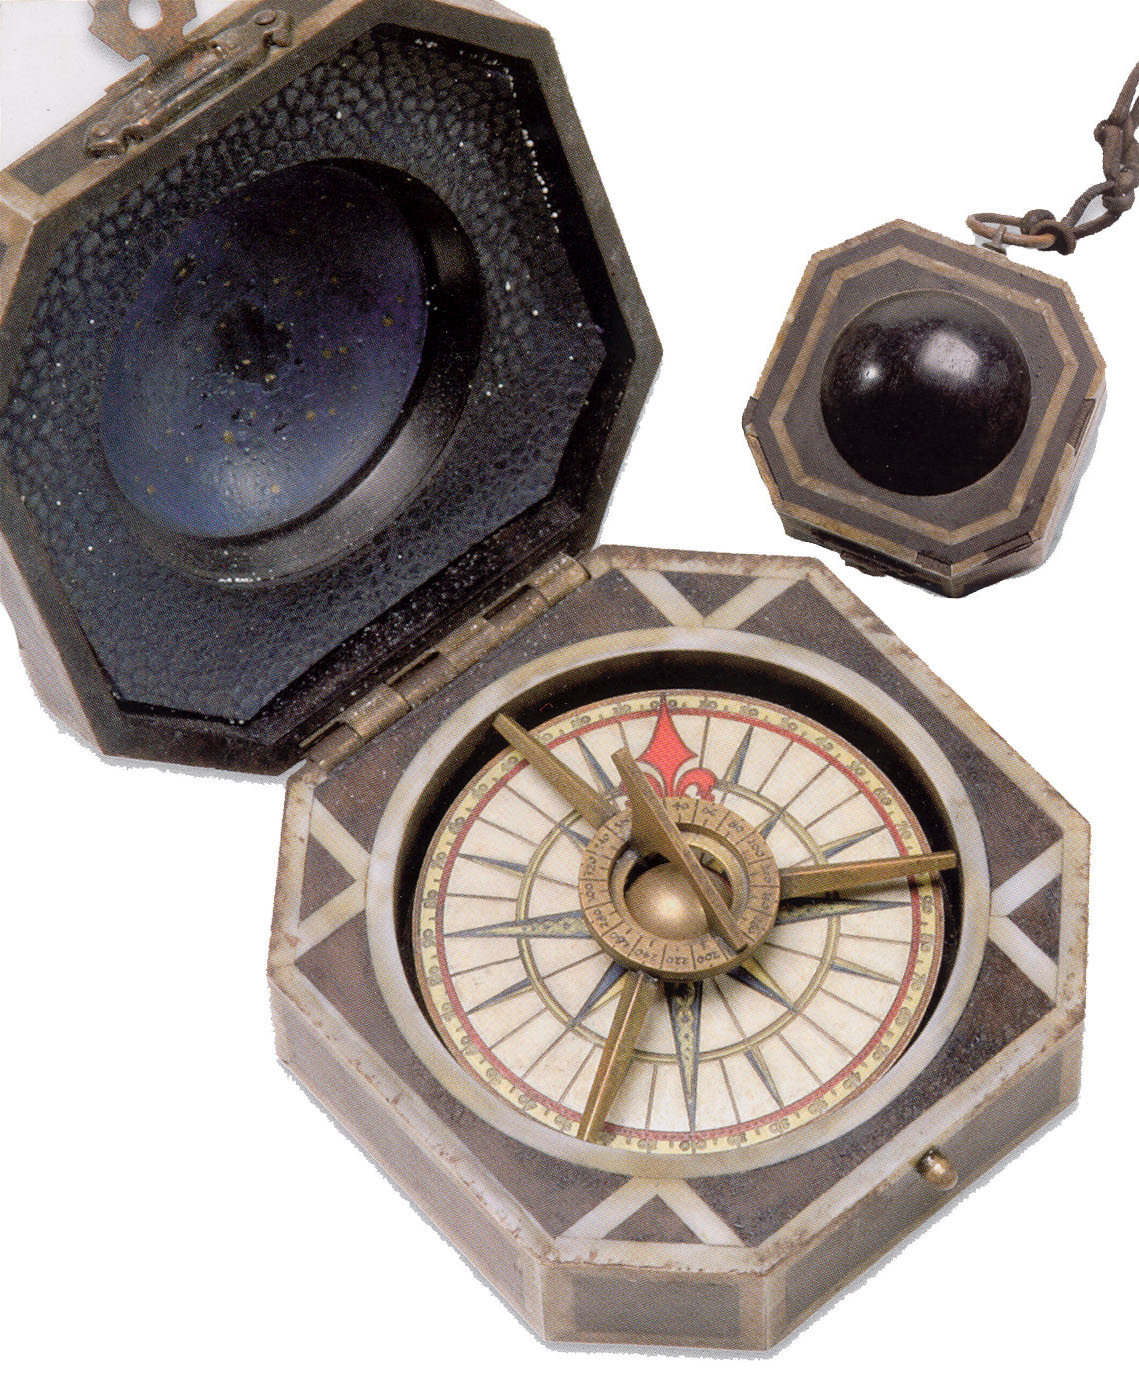 Jack Sparrow S Compass Disney Wiki Fandom